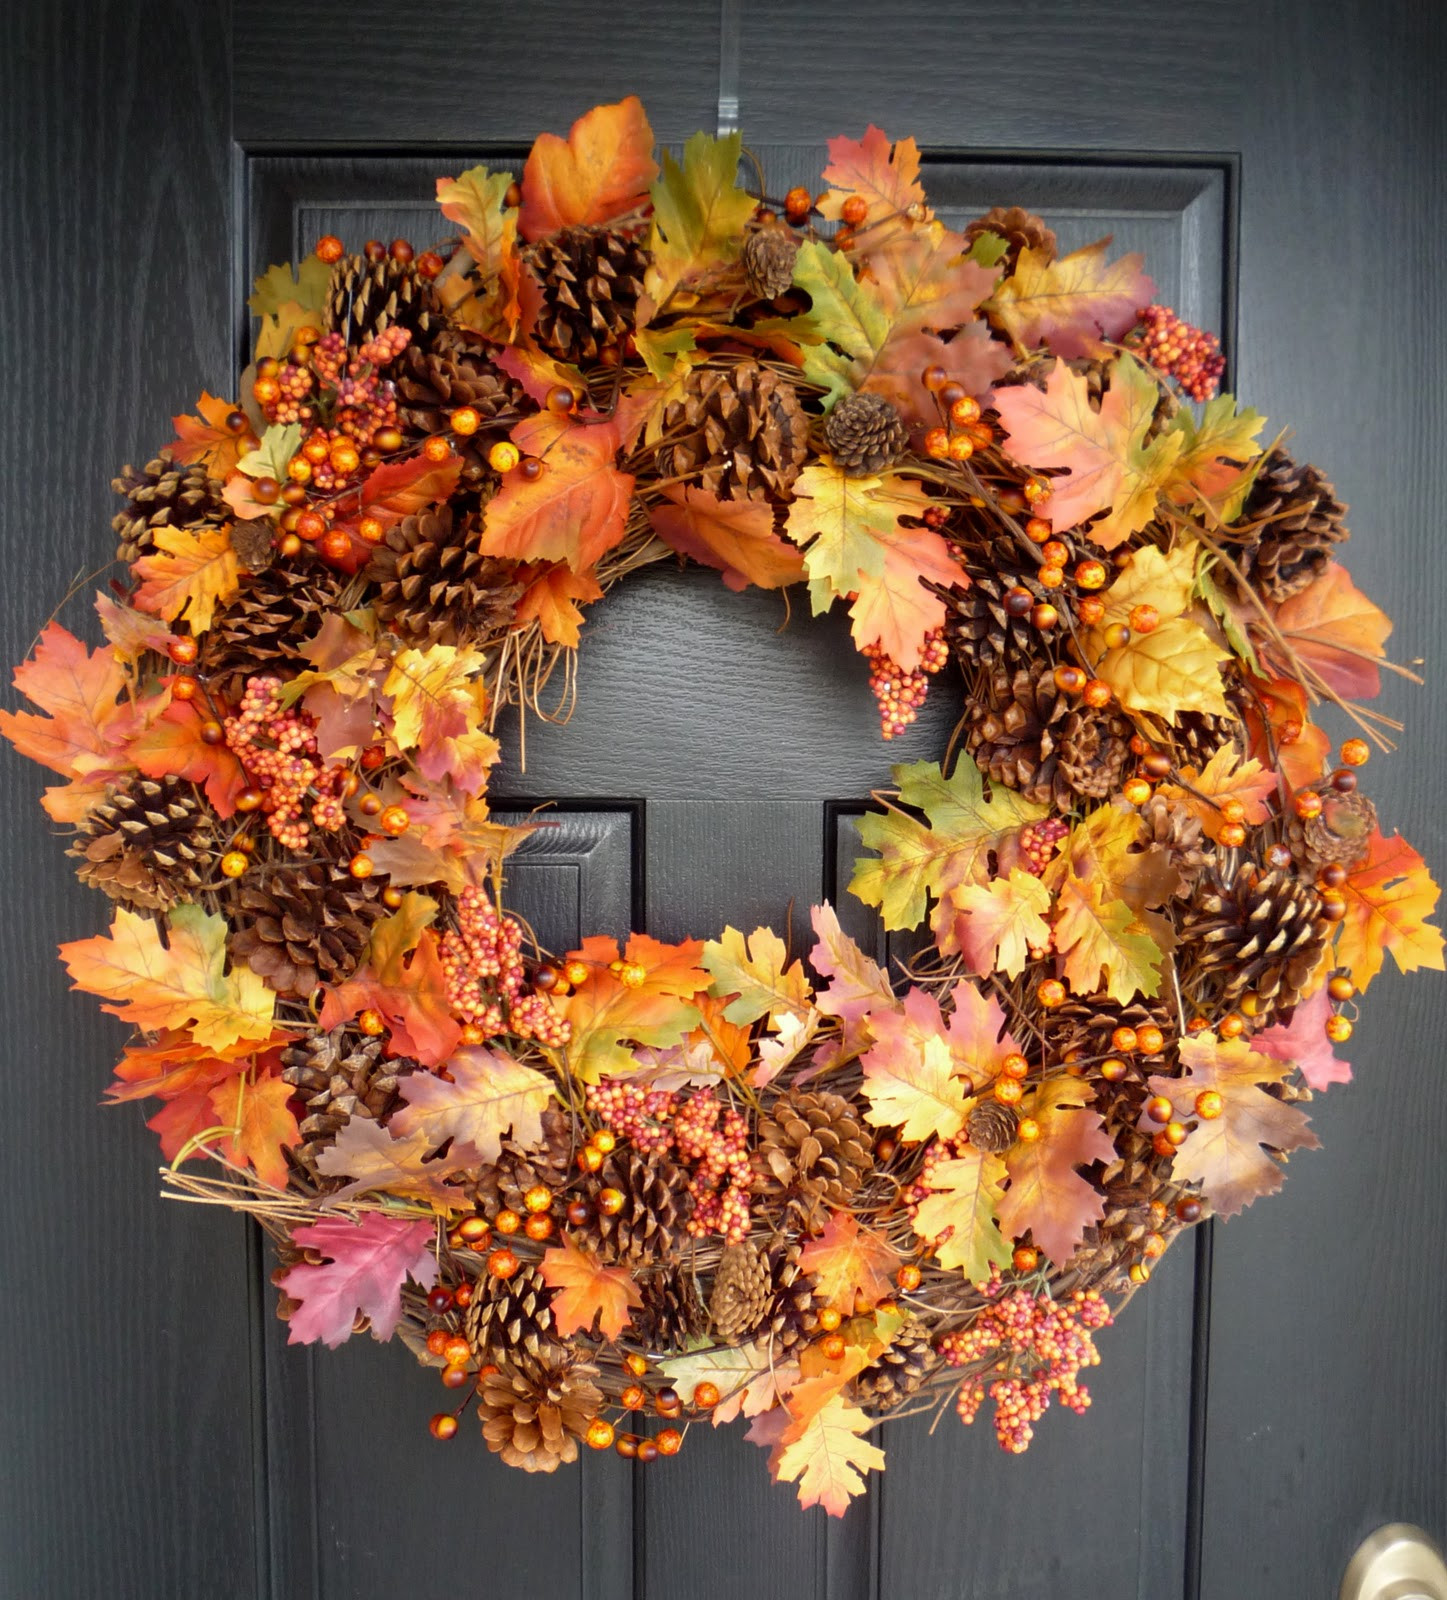 Fall Wreath Ideas Diy
 Crafty Sisters "Plump" Fall Wreath